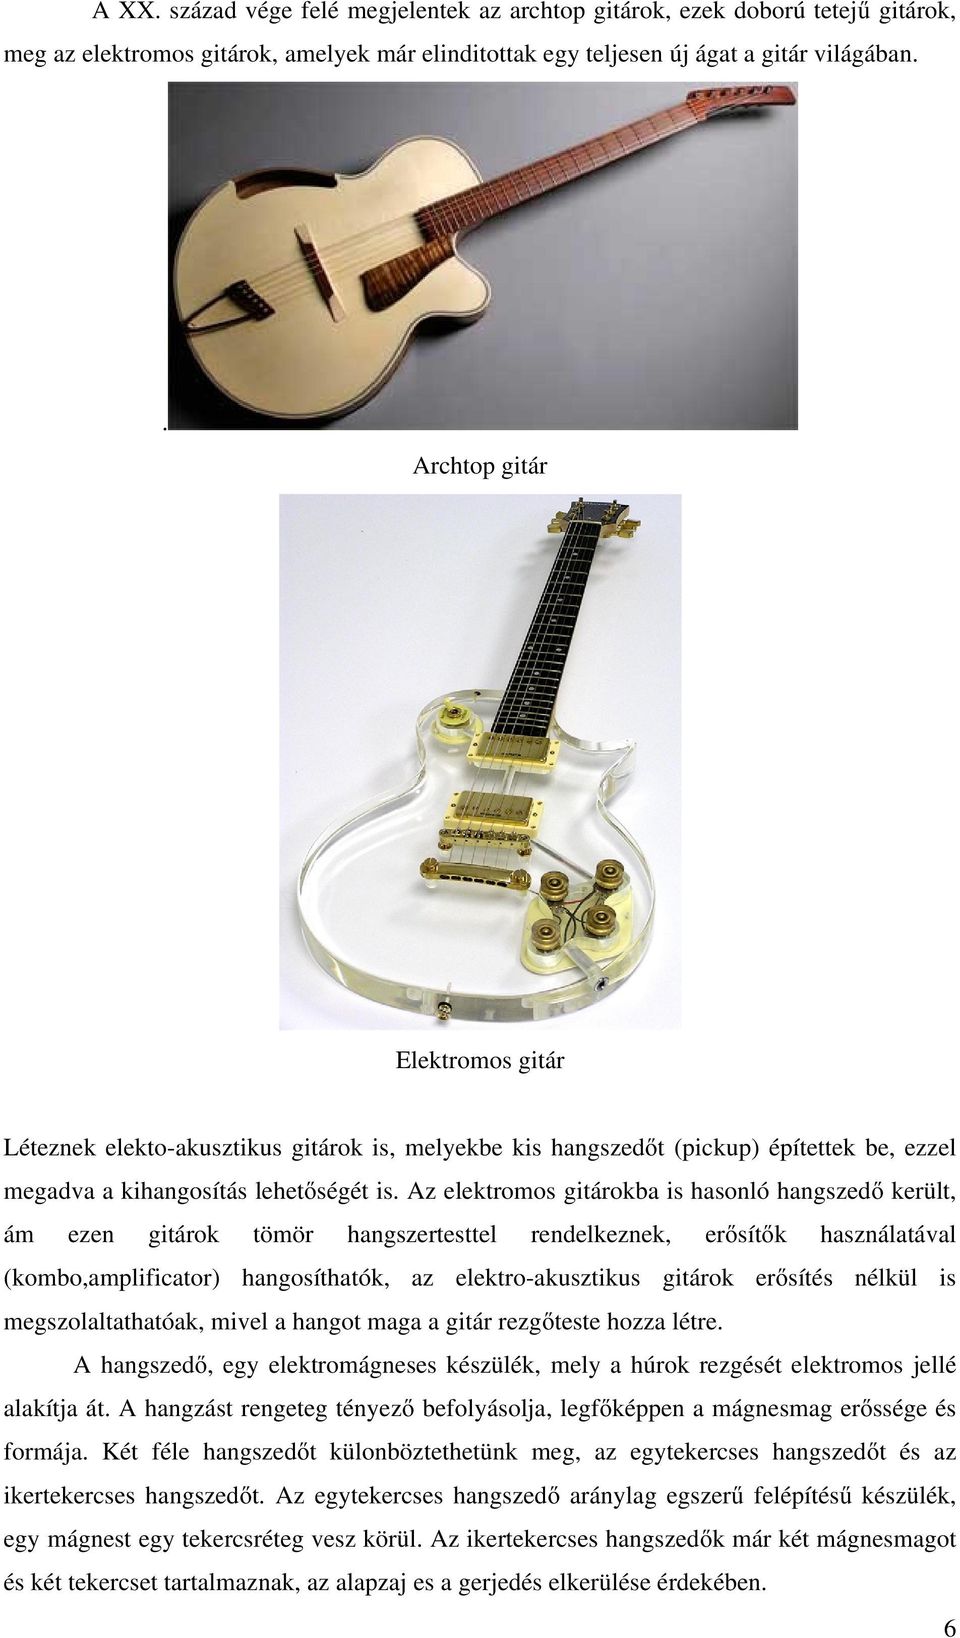 Az elektromos gitárokba is hasonló hangszedő került, ám ezen gitárok tömör hangszertesttel rendelkeznek, erősítők használatával (kombo,amplificator) hangosíthatók, az elektro-akusztikus gitárok